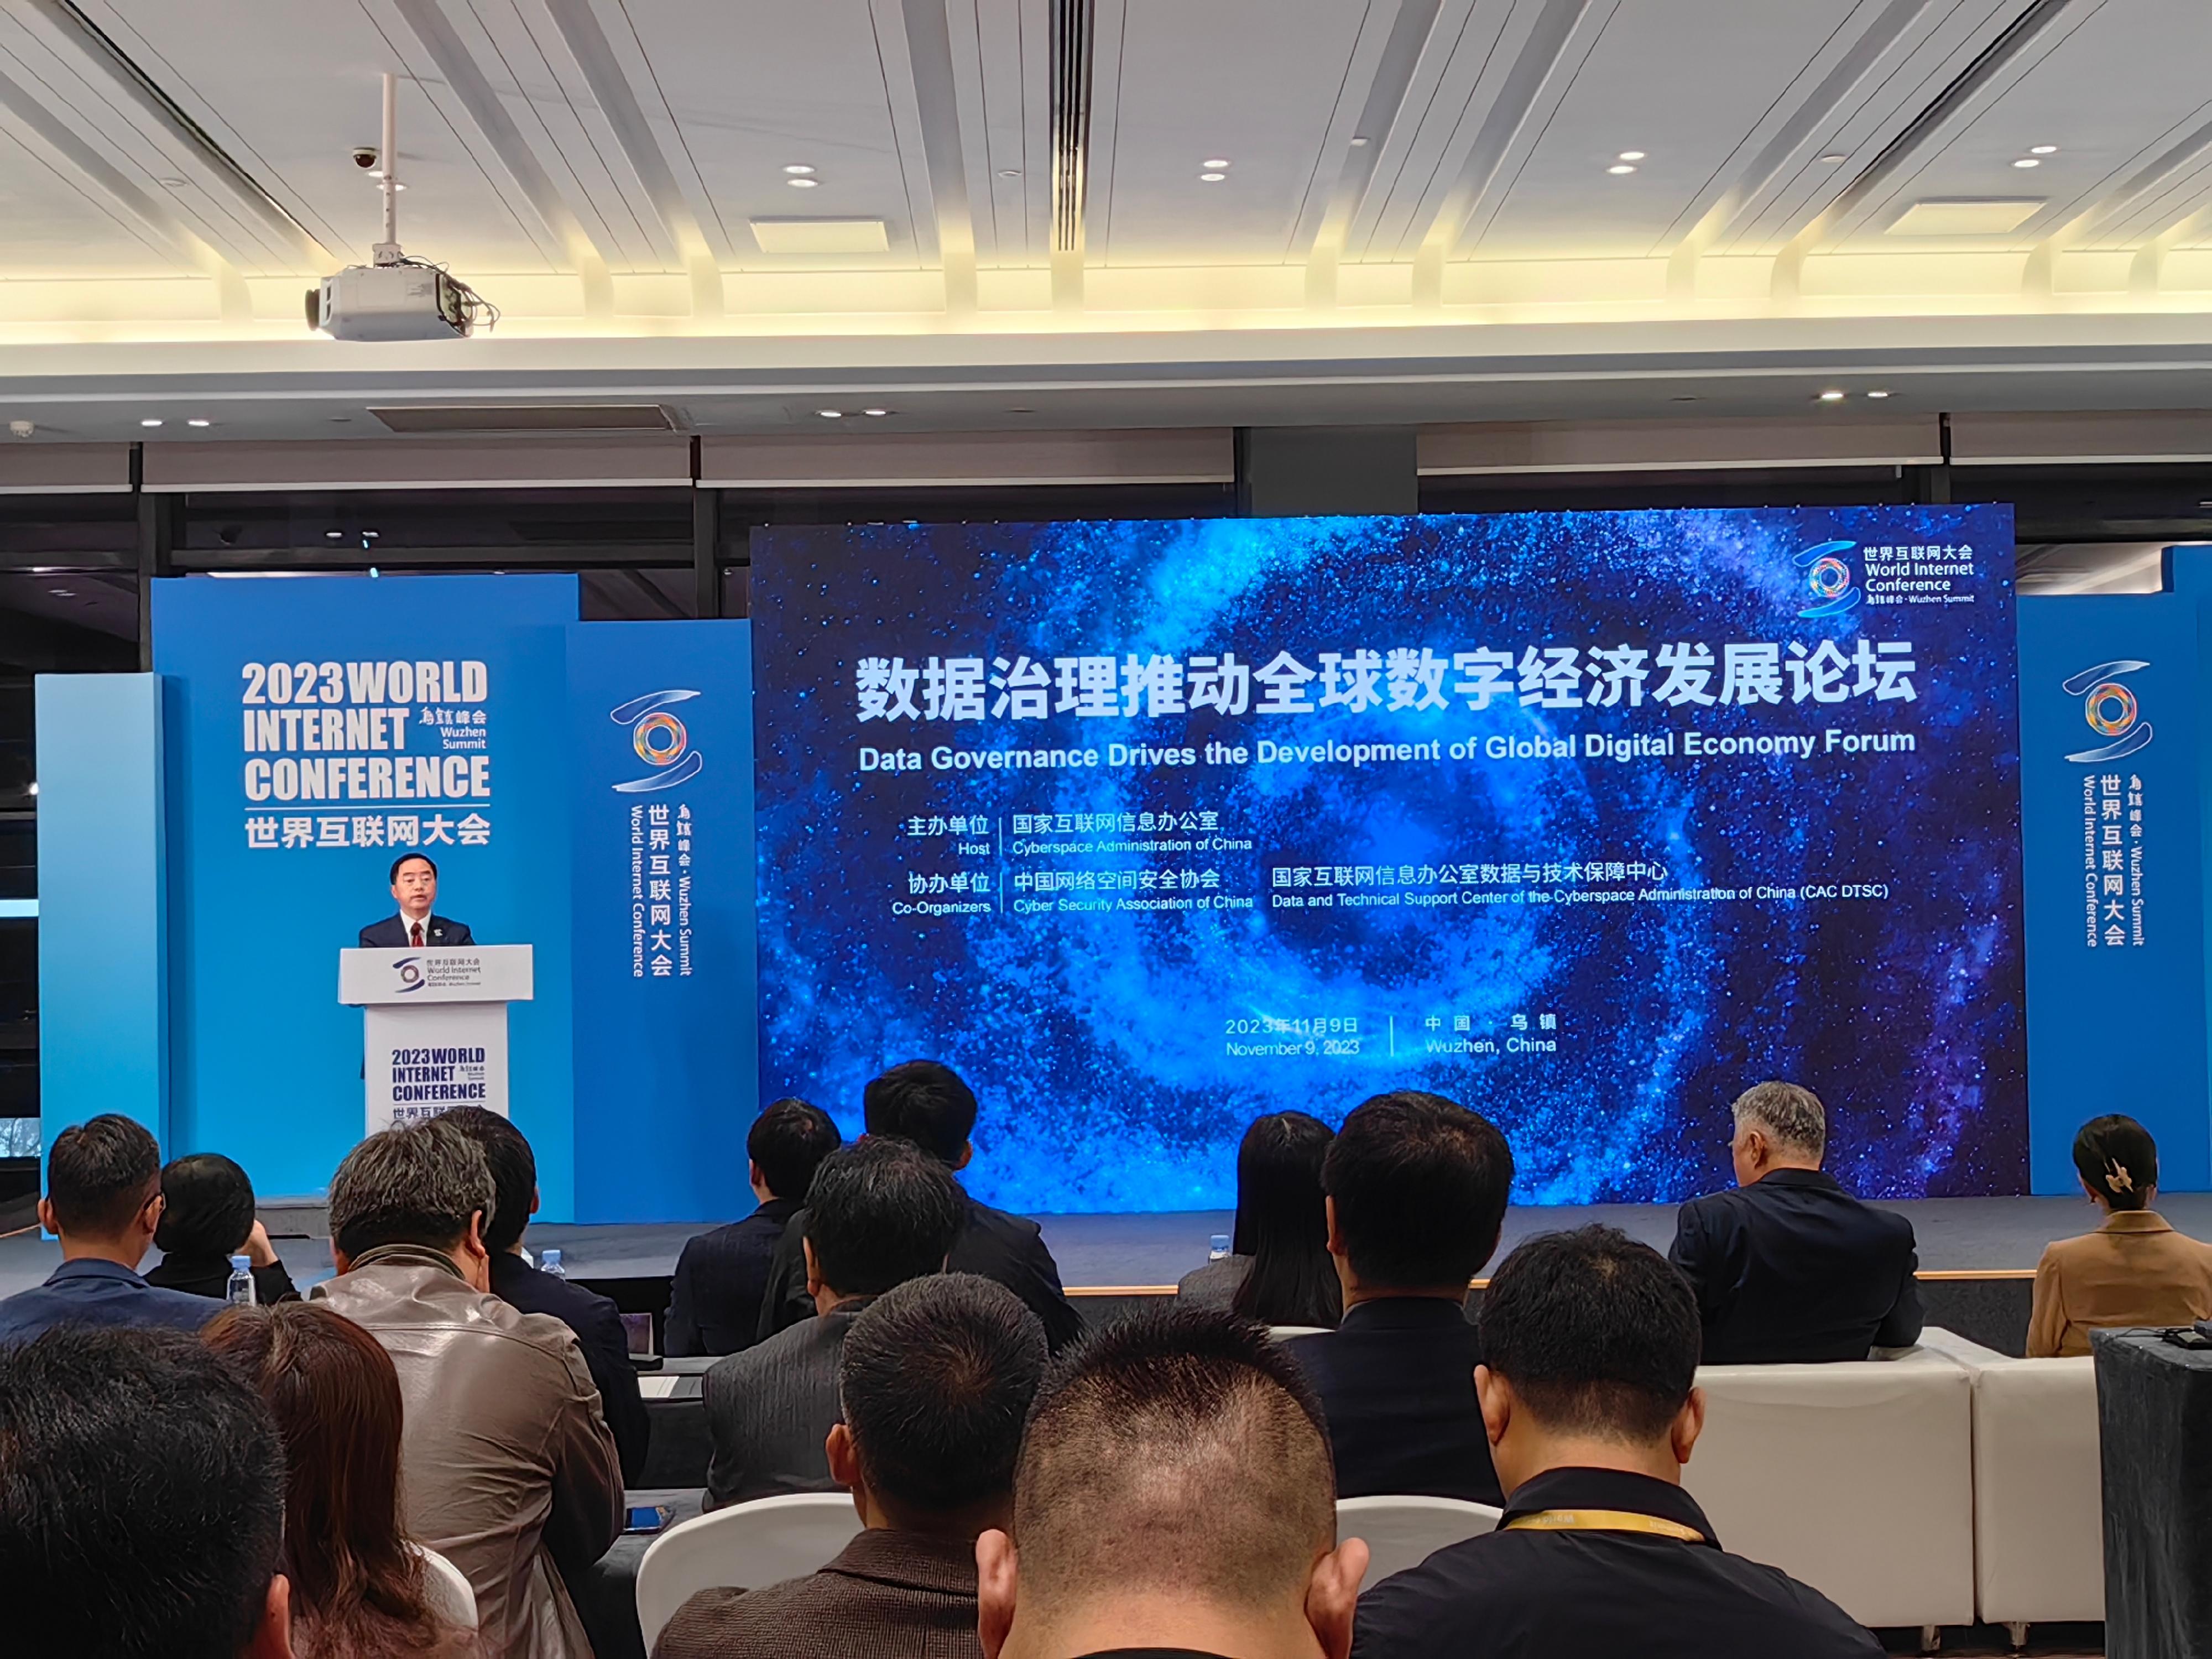 政府資訊科技總監黃志光今日（十一月九日）在浙江出席2023年世界互聯網大會烏鎮峰會，並於「數據治理推動全球數字經濟發展論壇」致辭。